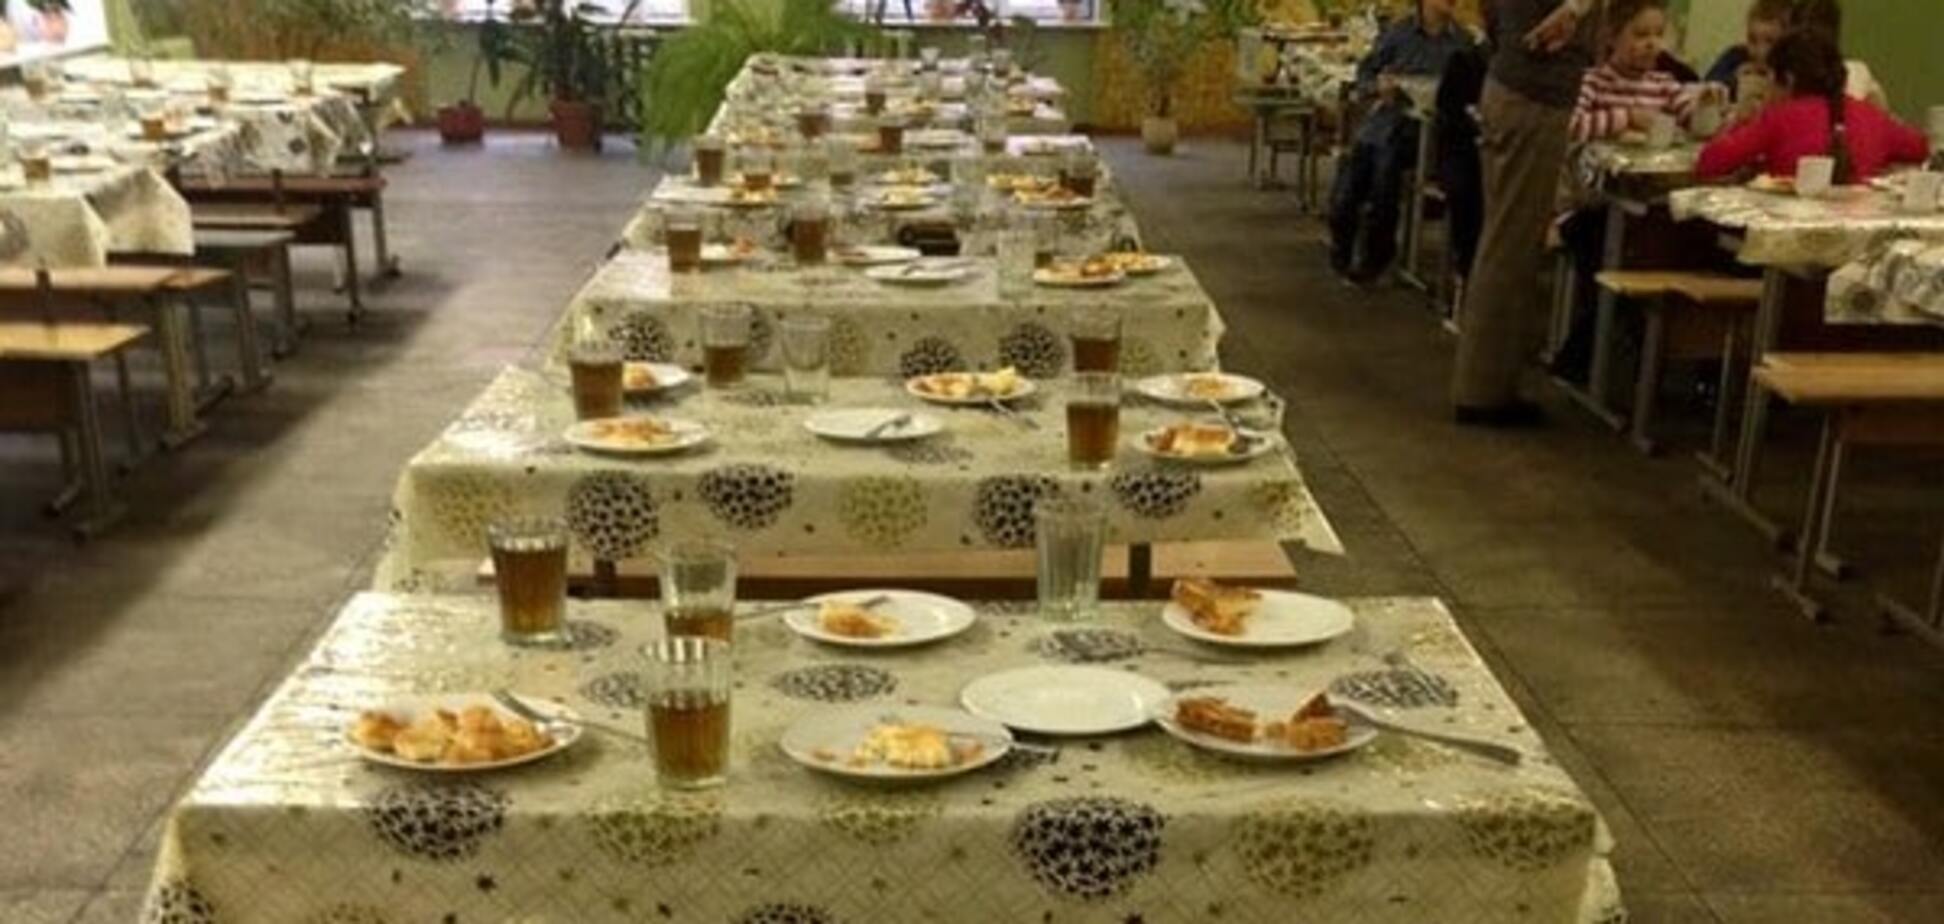 Скандал у київській школі: учням на сніданок подали недоїдки